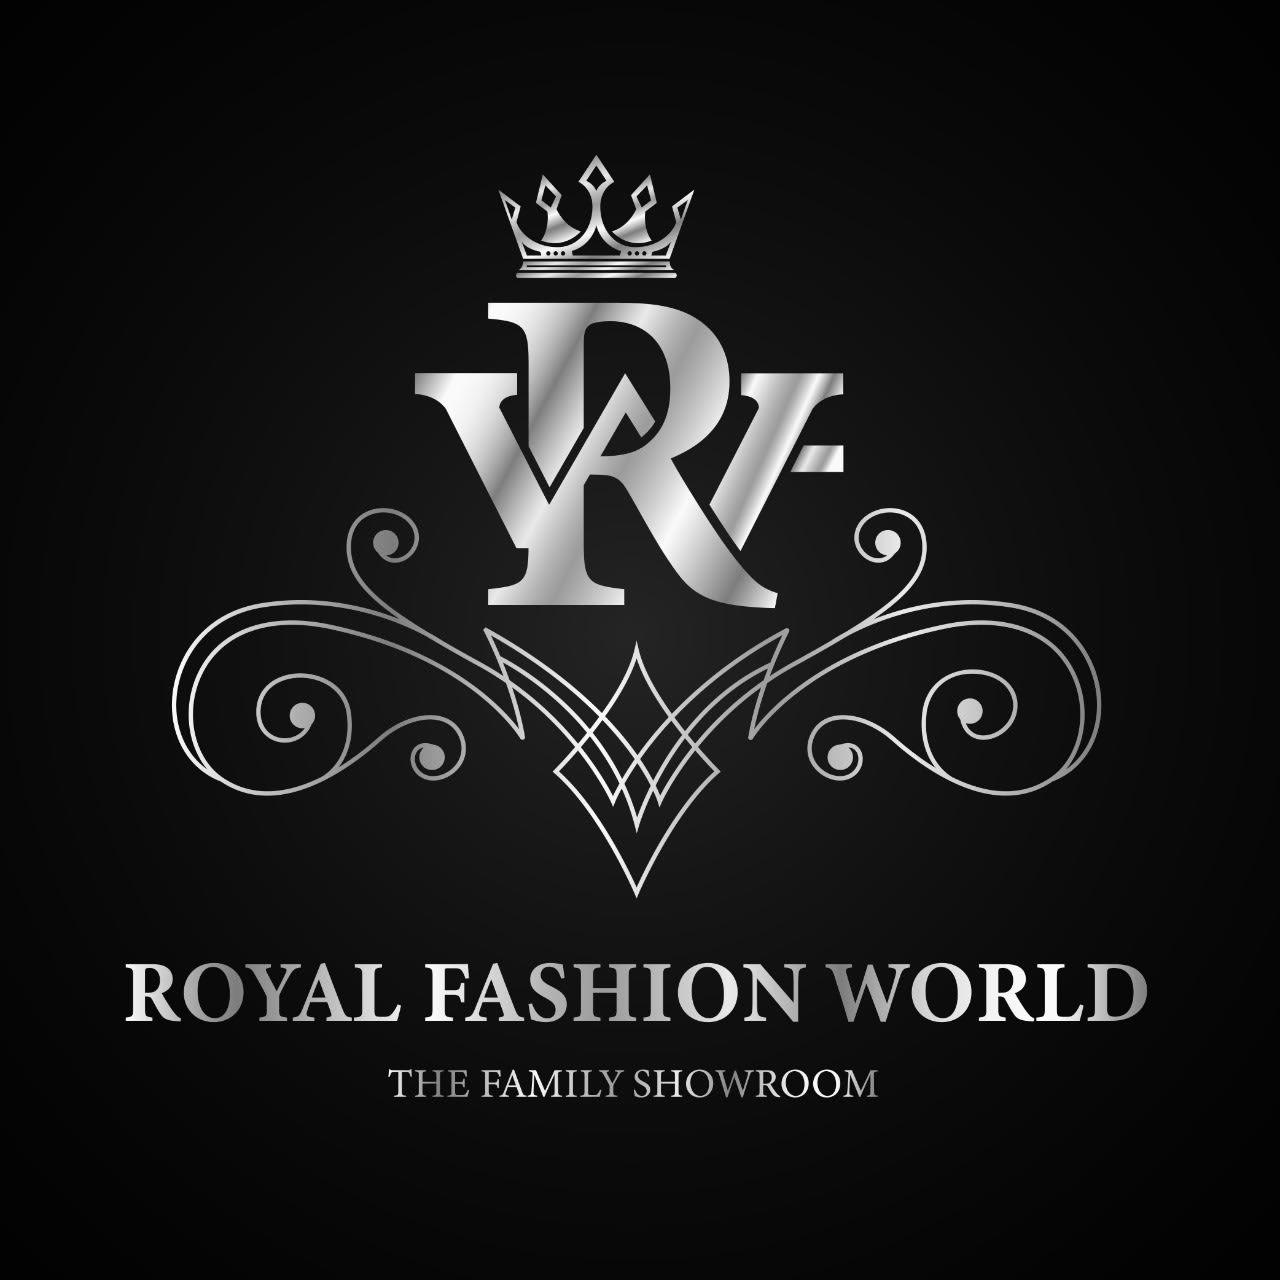 Royal Fashion World